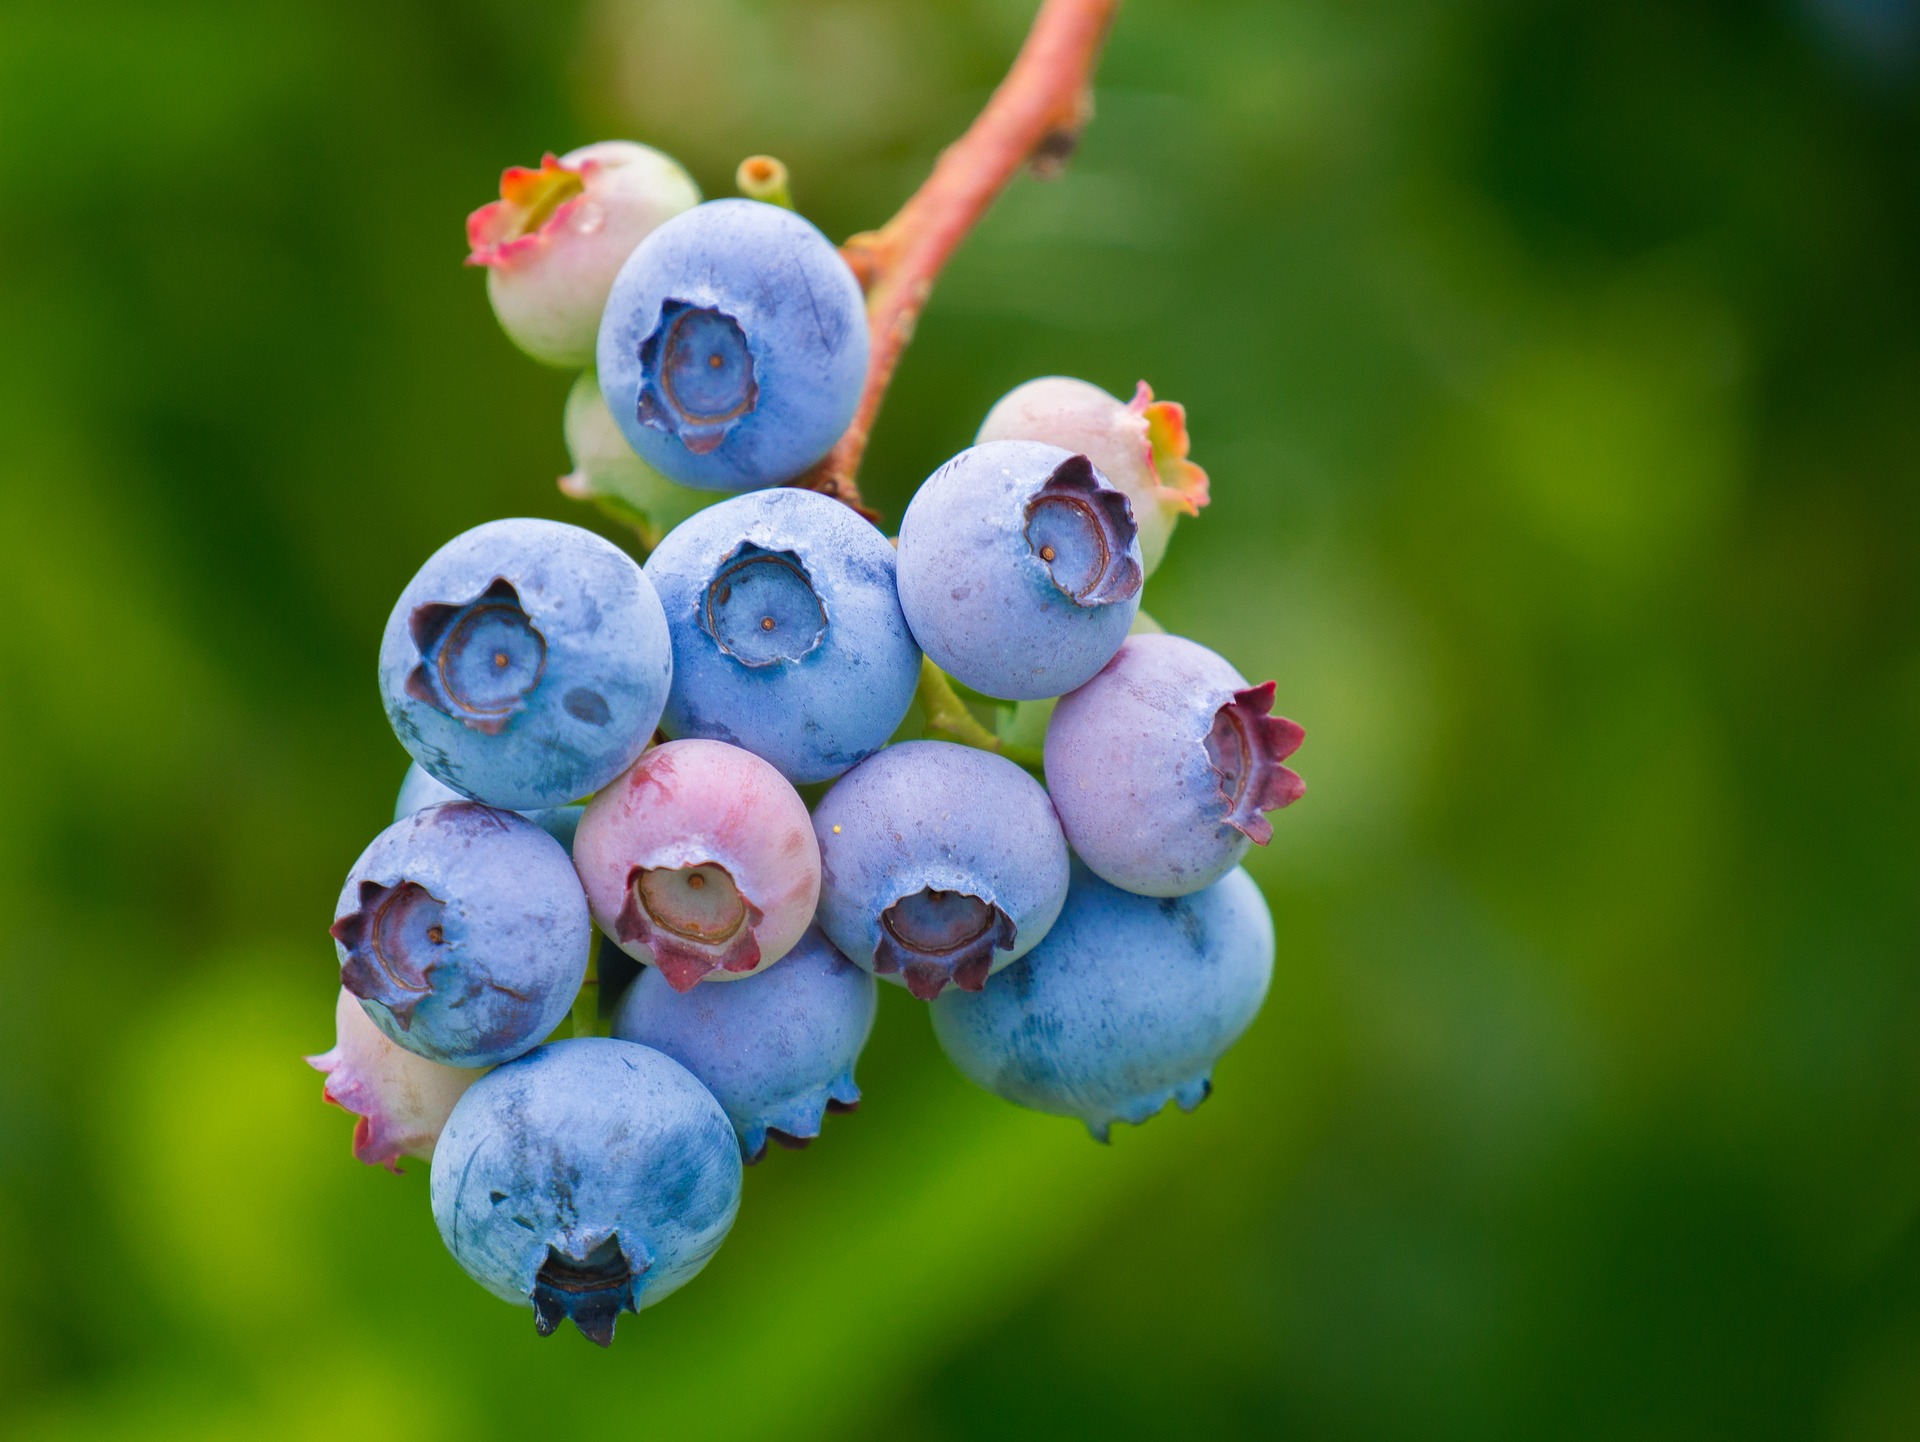 blueberries-g72e3a651d_1920